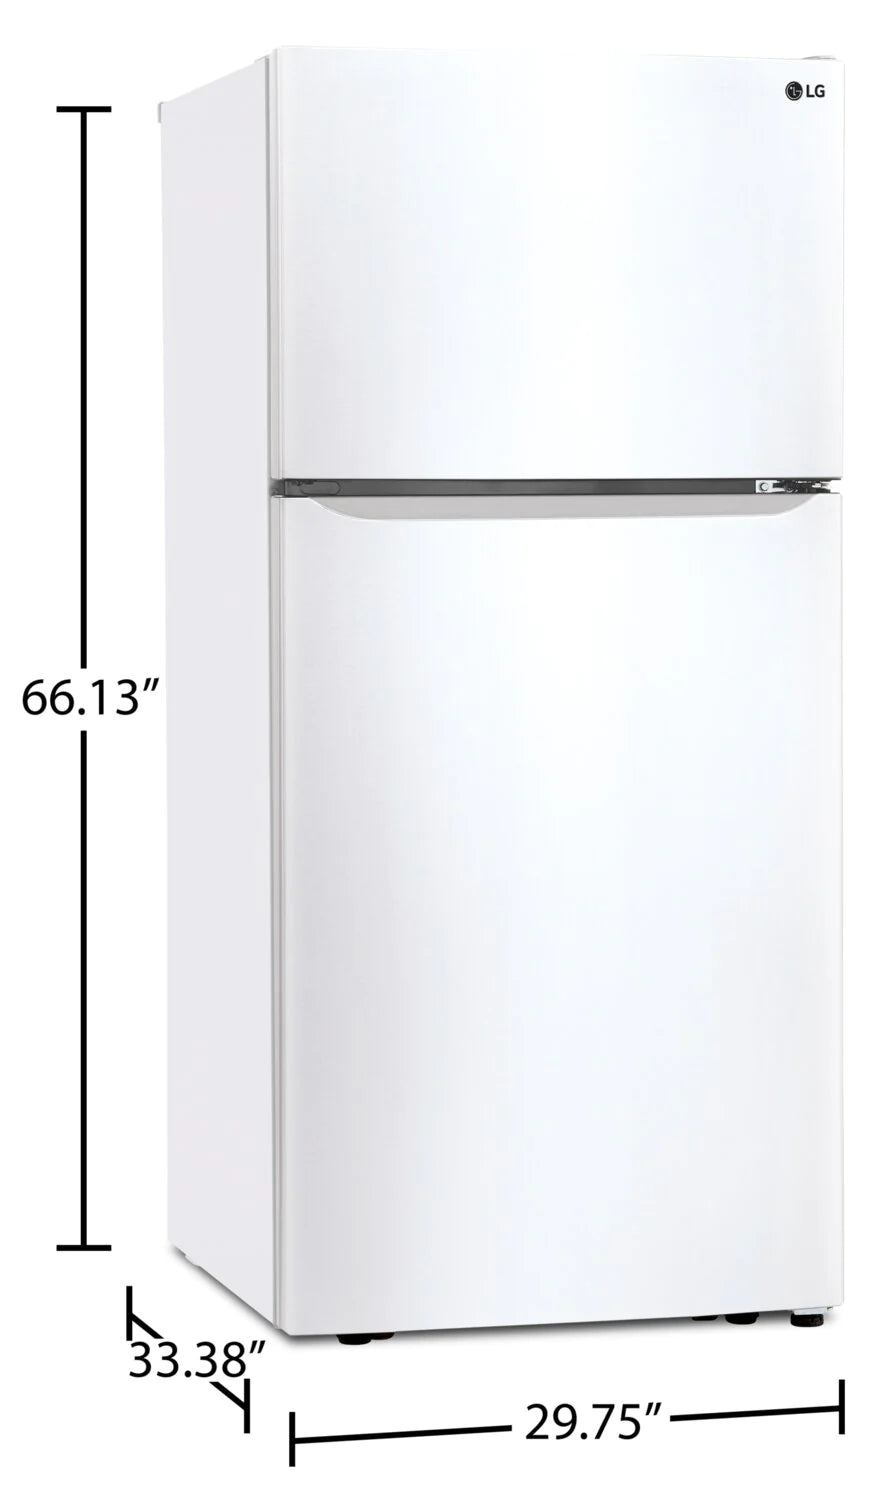 LG Refrigerator 30" White LTCS20020W